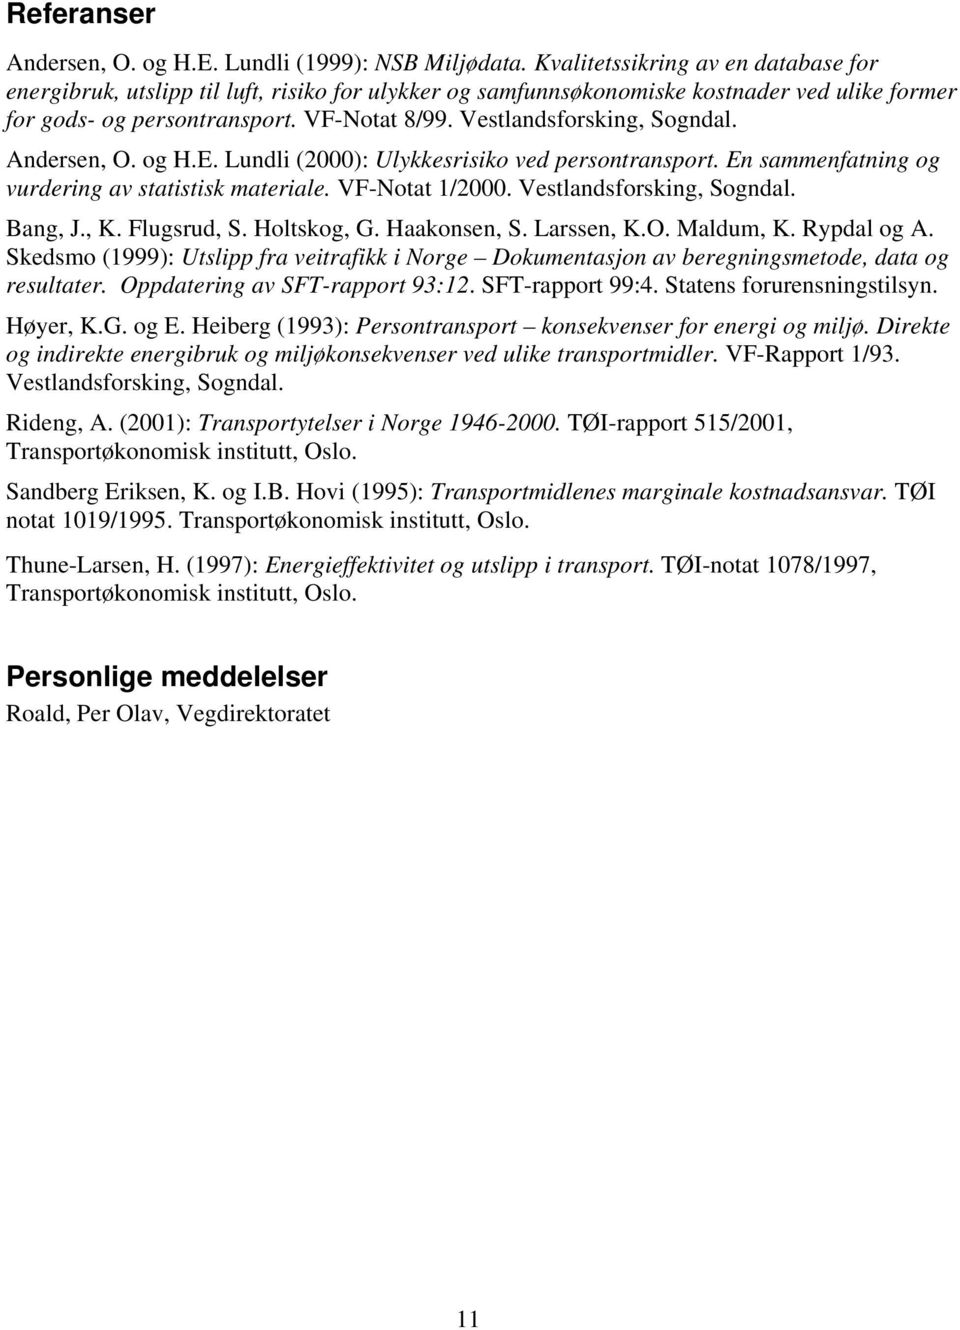 Vestlandsforsking, Sogndal. Andersen, O. og H.E. Lundli (2000): Ulykkesrisiko ved persontransport. En sammenfatning og vurdering av statistisk materiale. VF-Notat 1/2000. Vestlandsforsking, Sogndal.